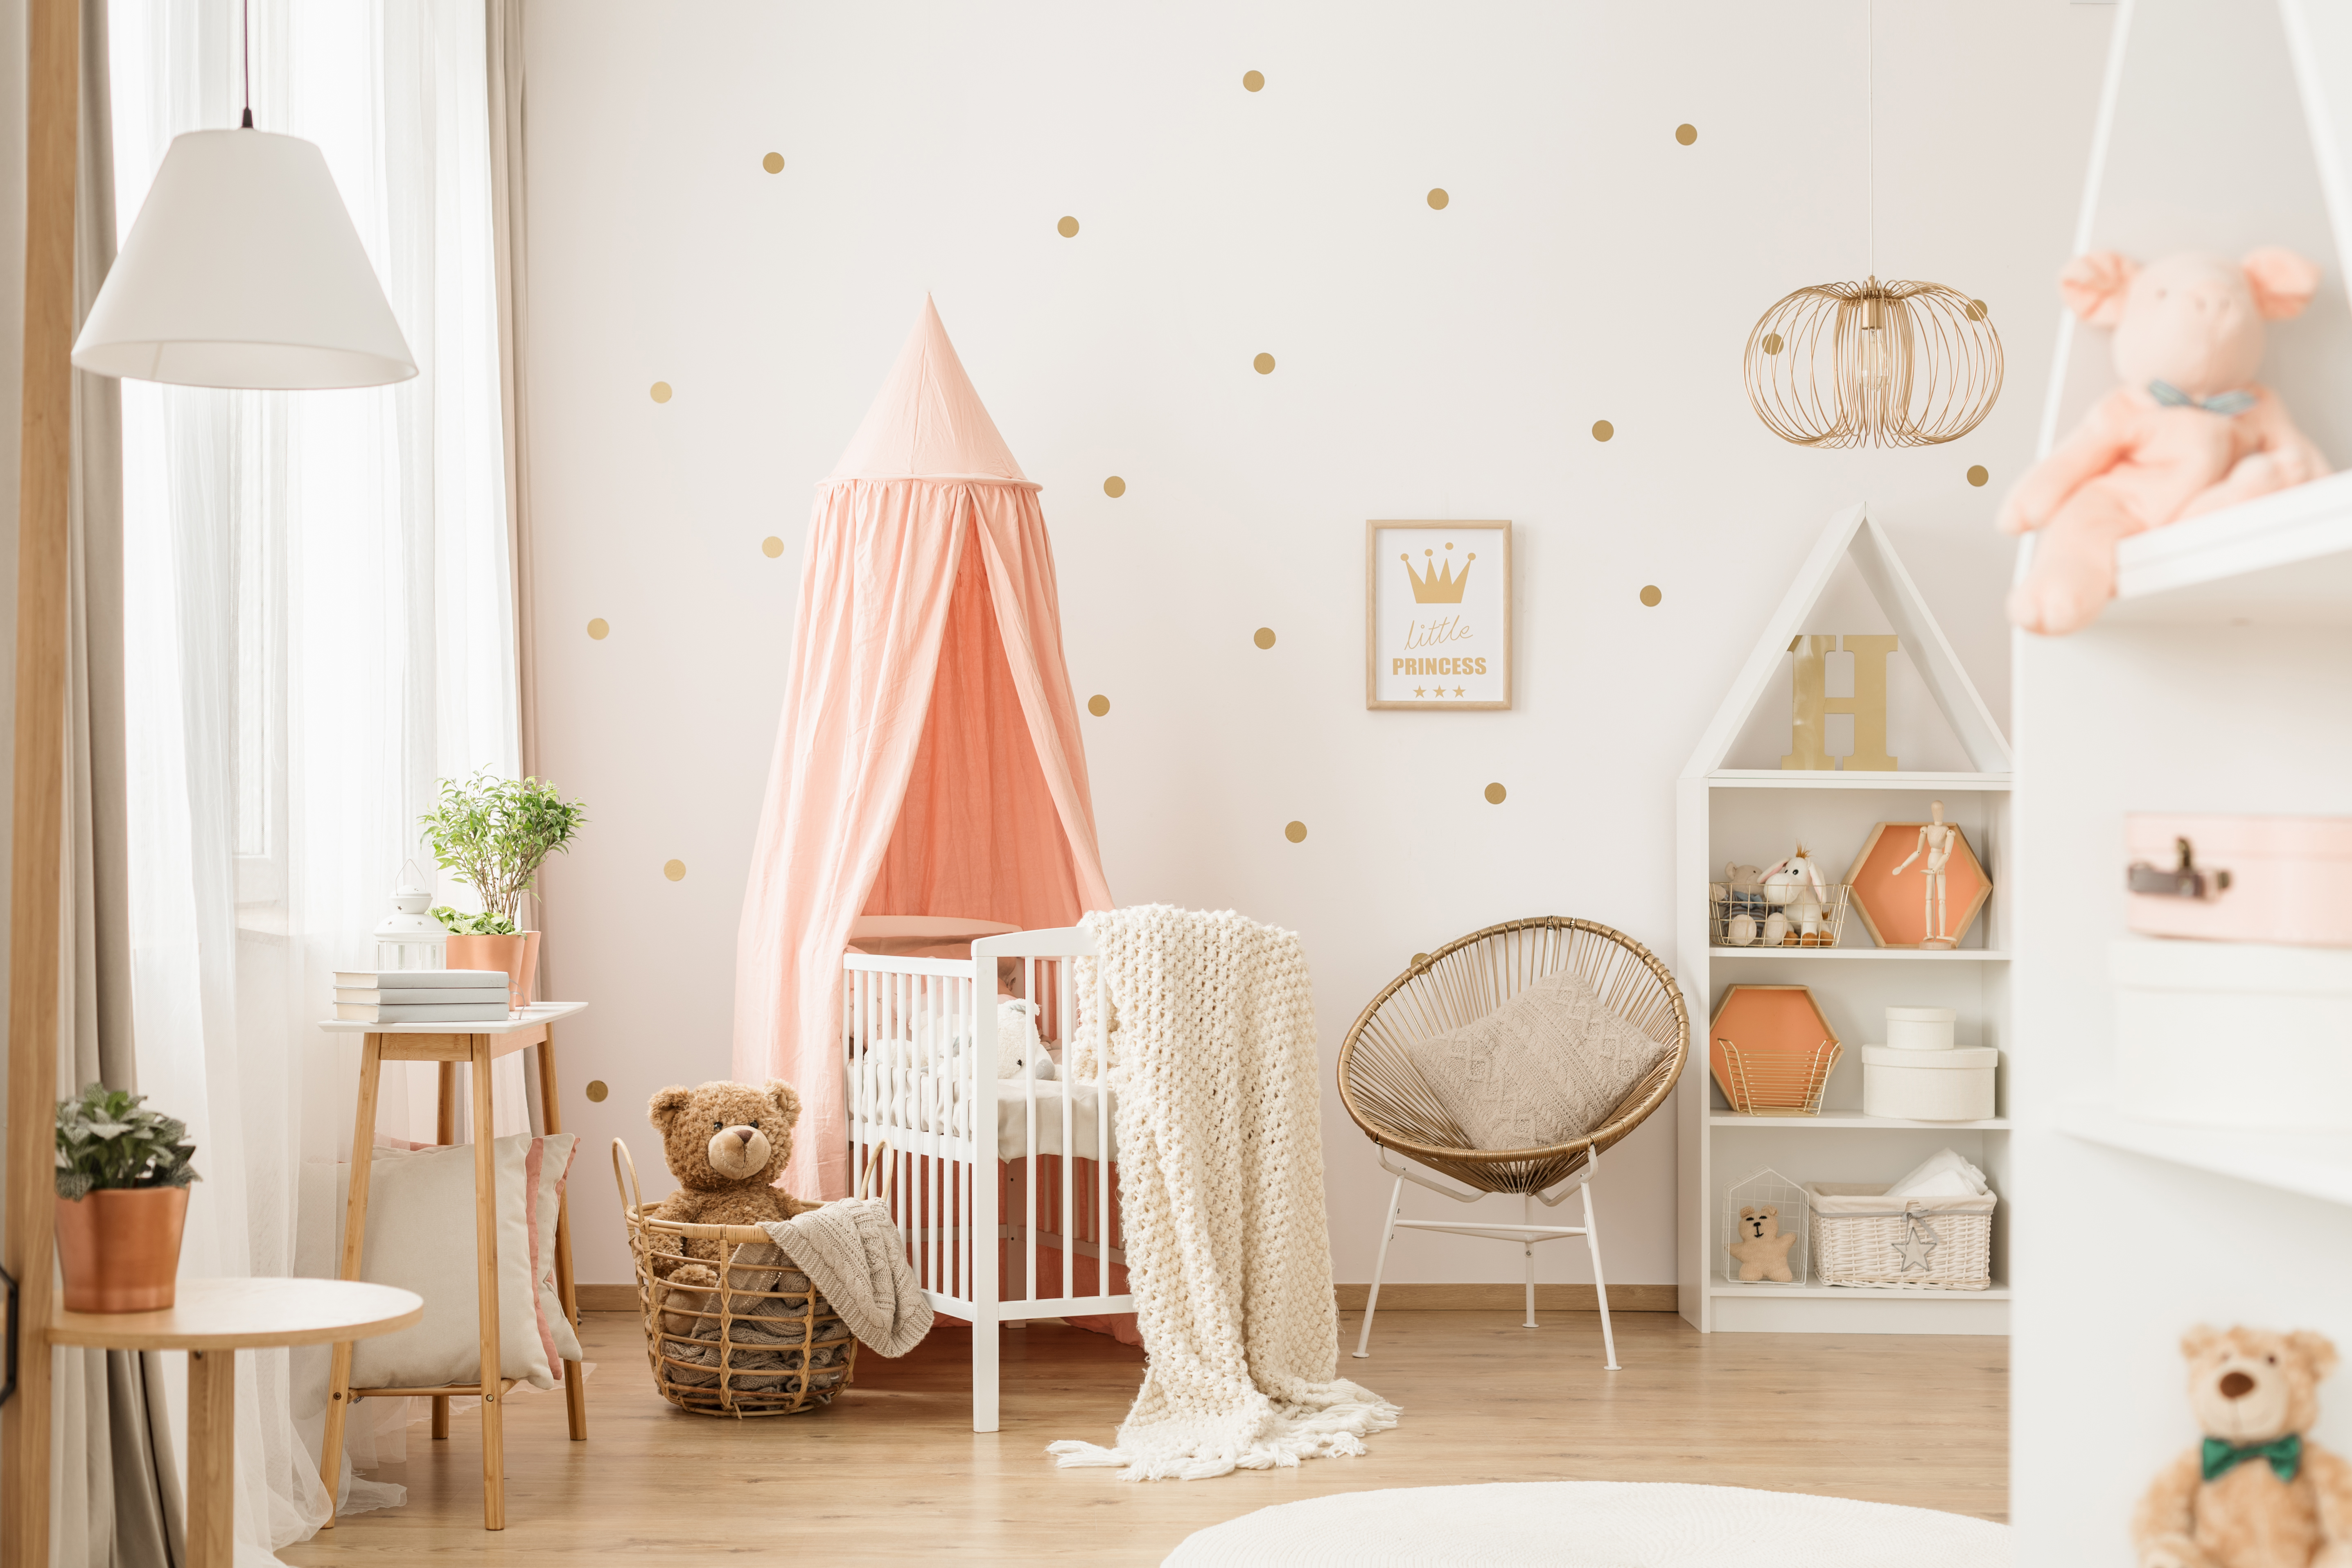 Chambre de bébé or et rose | Source : Getty Images